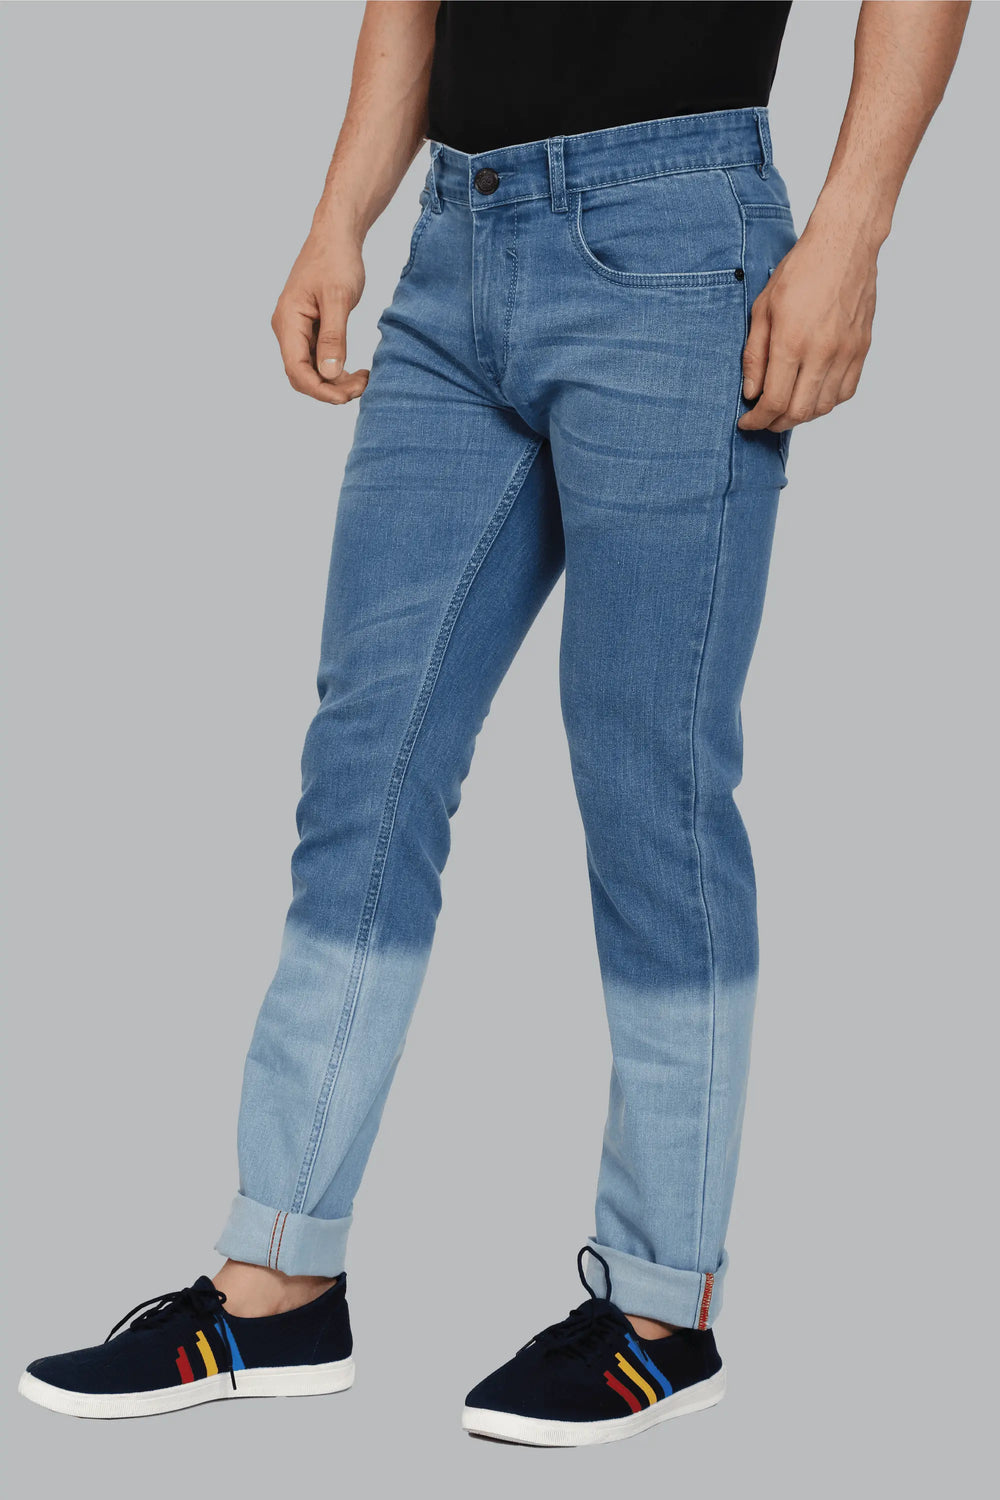 Slim Fit Blue Ombre Design Premium Denim Jeans For Men - Peplos Jeans 